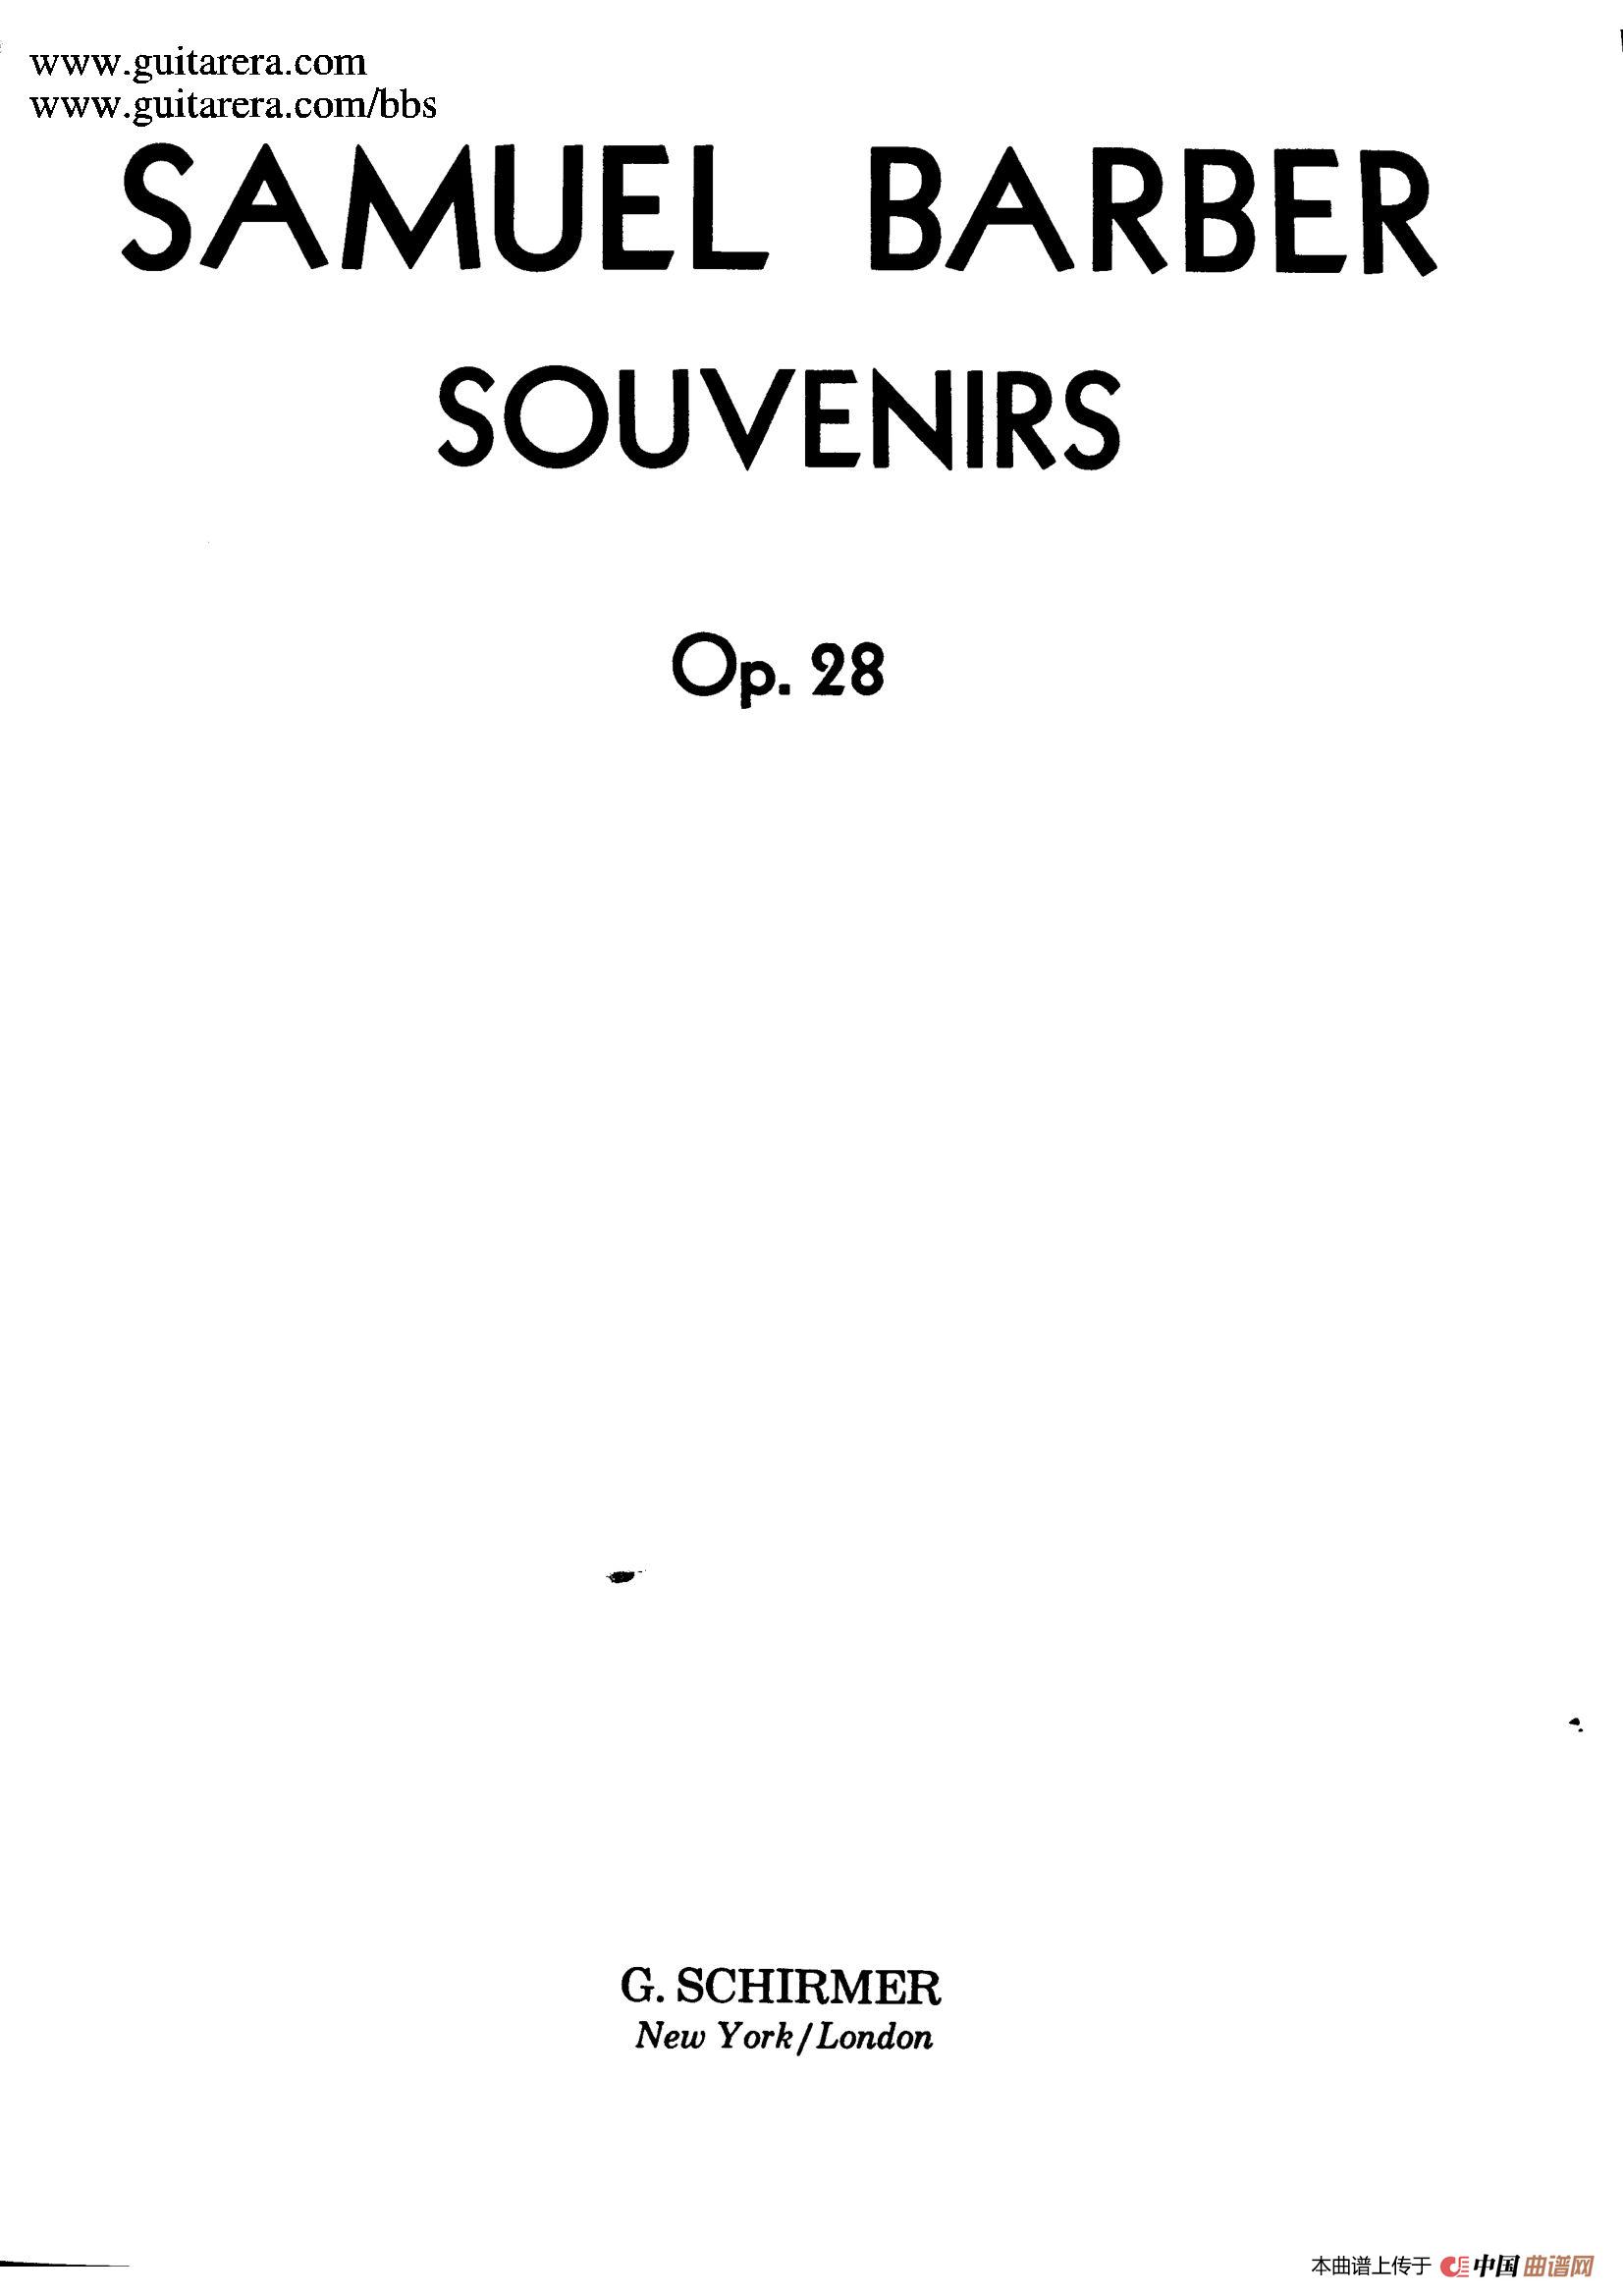 《Souvenirs Op.28》钢琴曲谱图分享